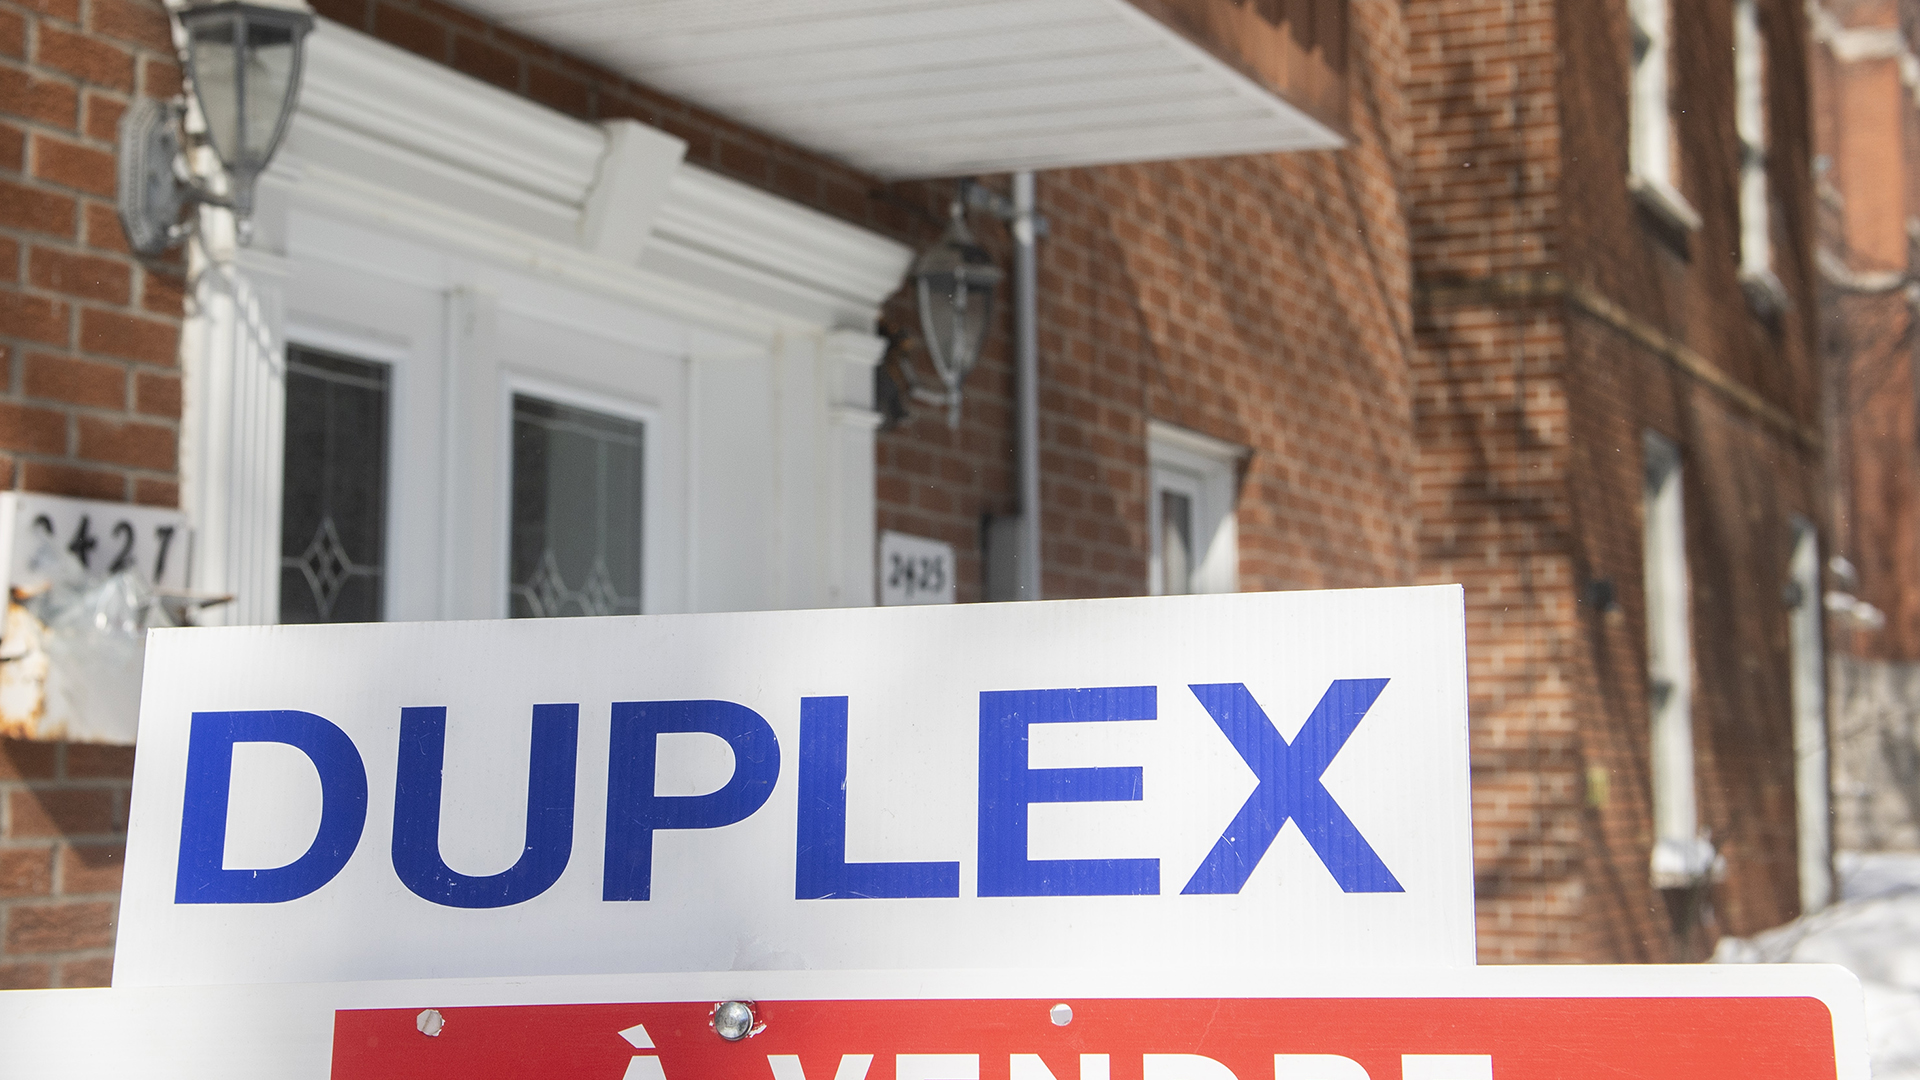 Le prix moyen d'une maison au Canada pourrait chuter de 20 % à 25 % d'ici le premier trimestre de 2023, selon une étude.